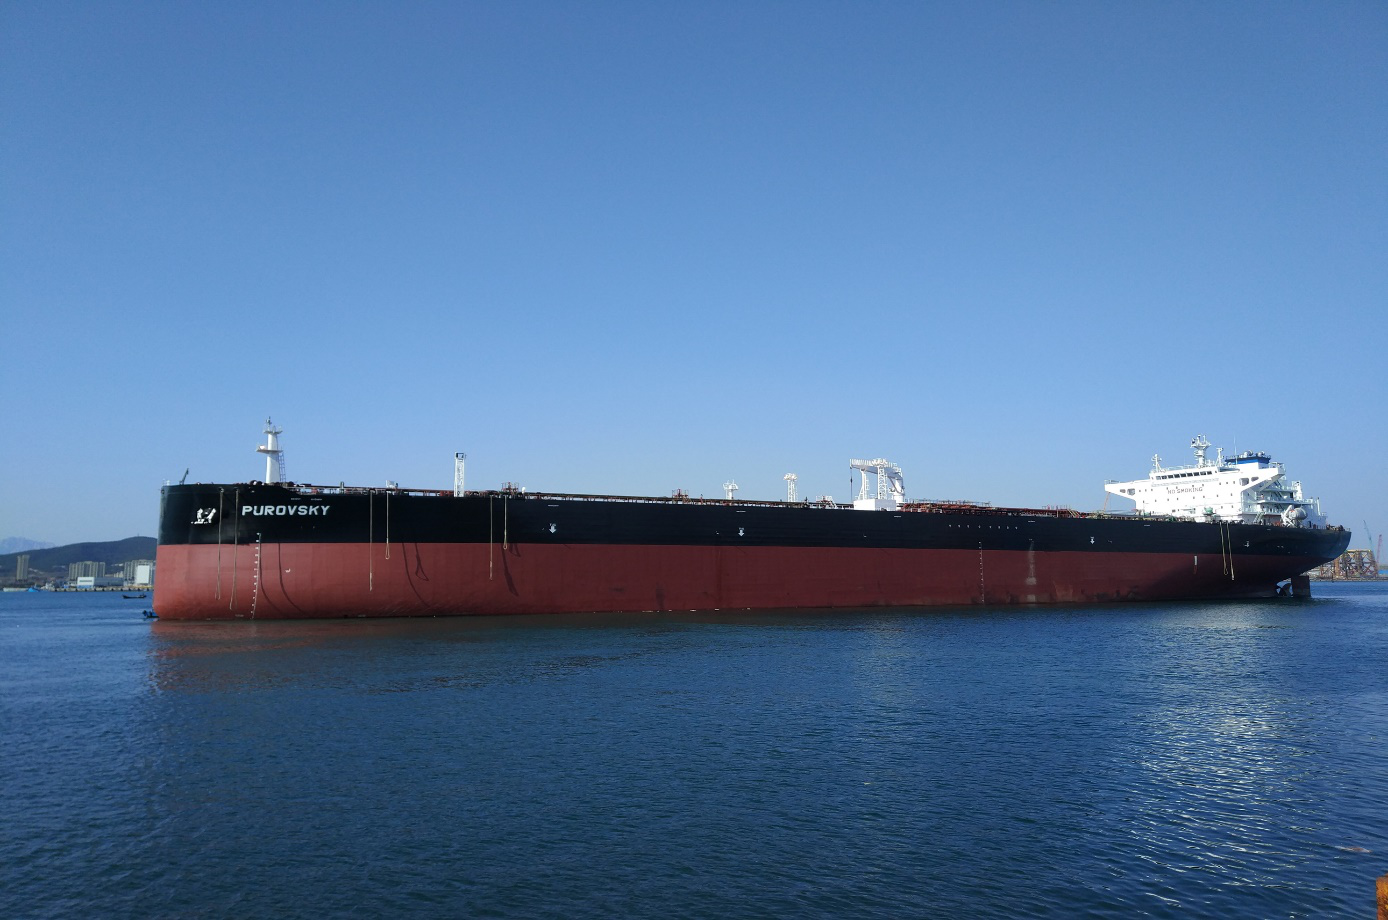 113,000 DWT refined oil tanker